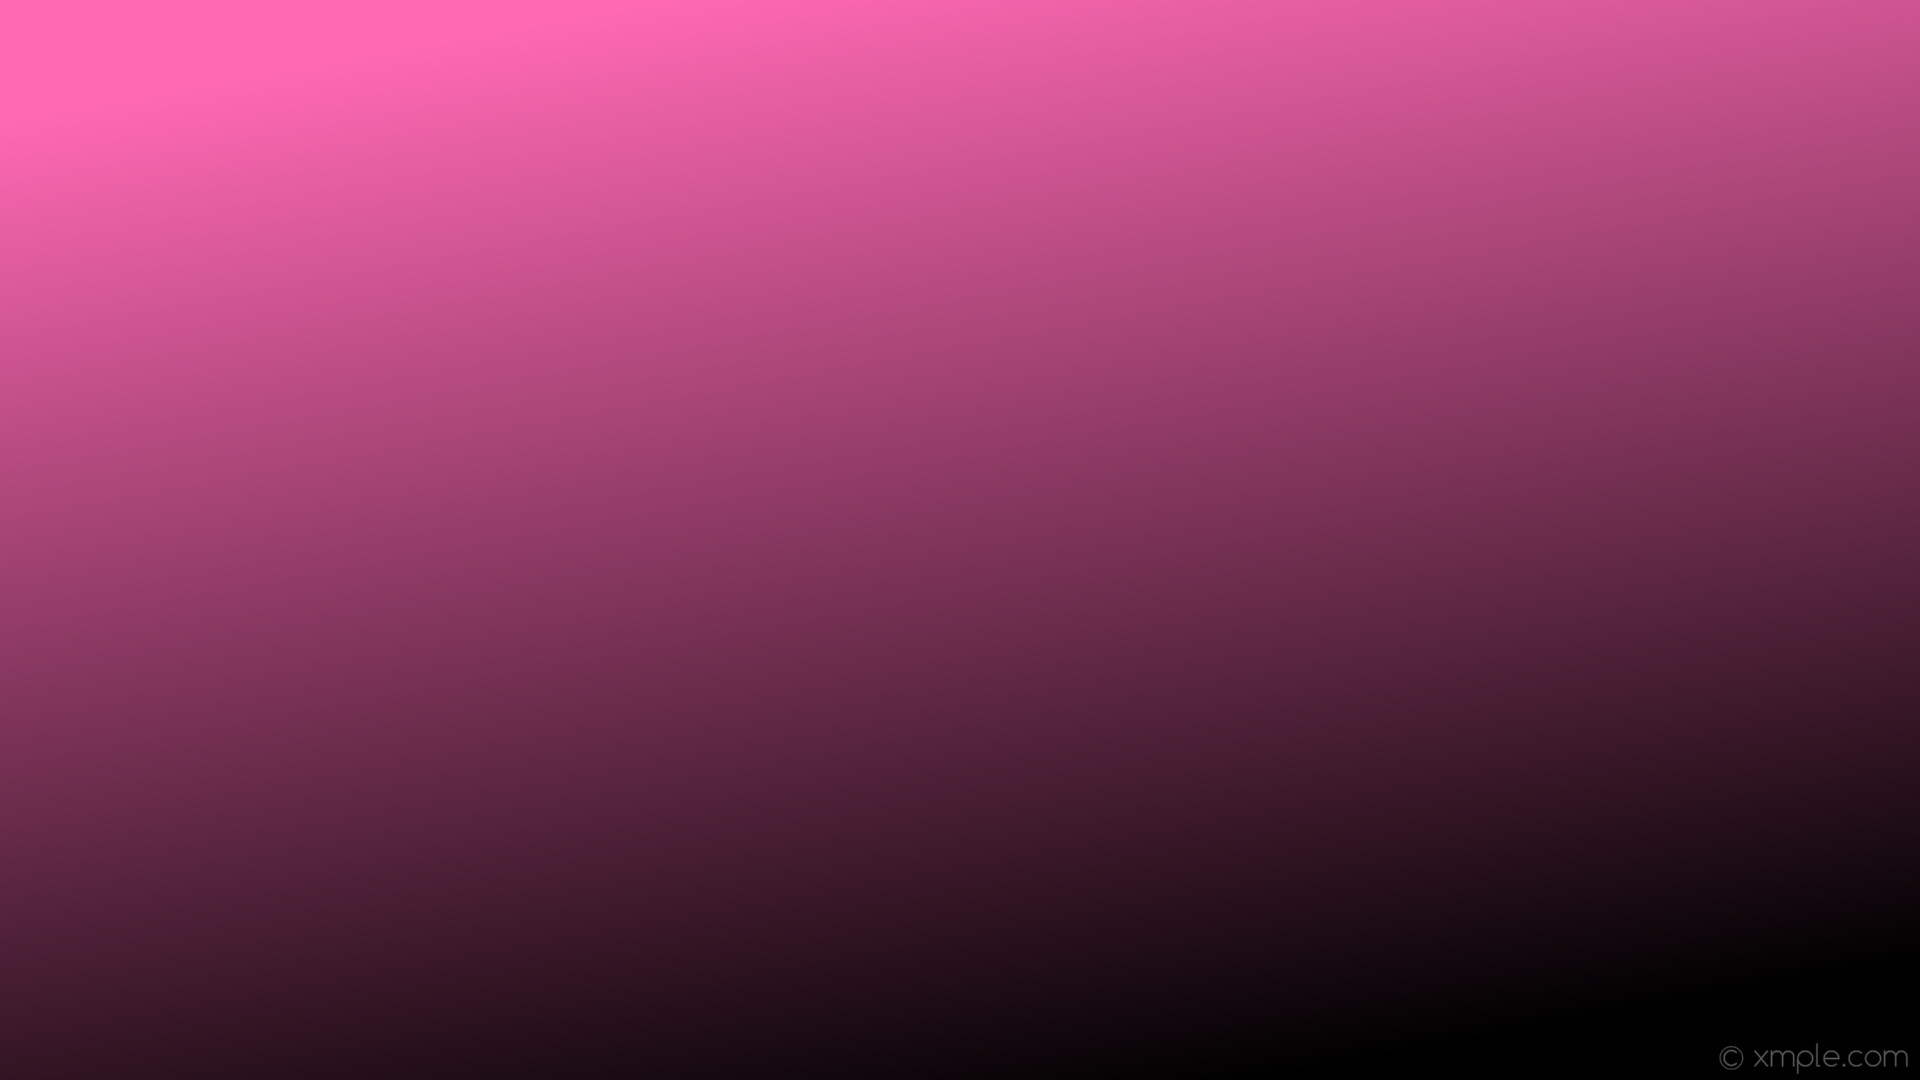 1920x1080 wallpaper gradient pink black linear hot pink #000000 #ff69b4 300Â°